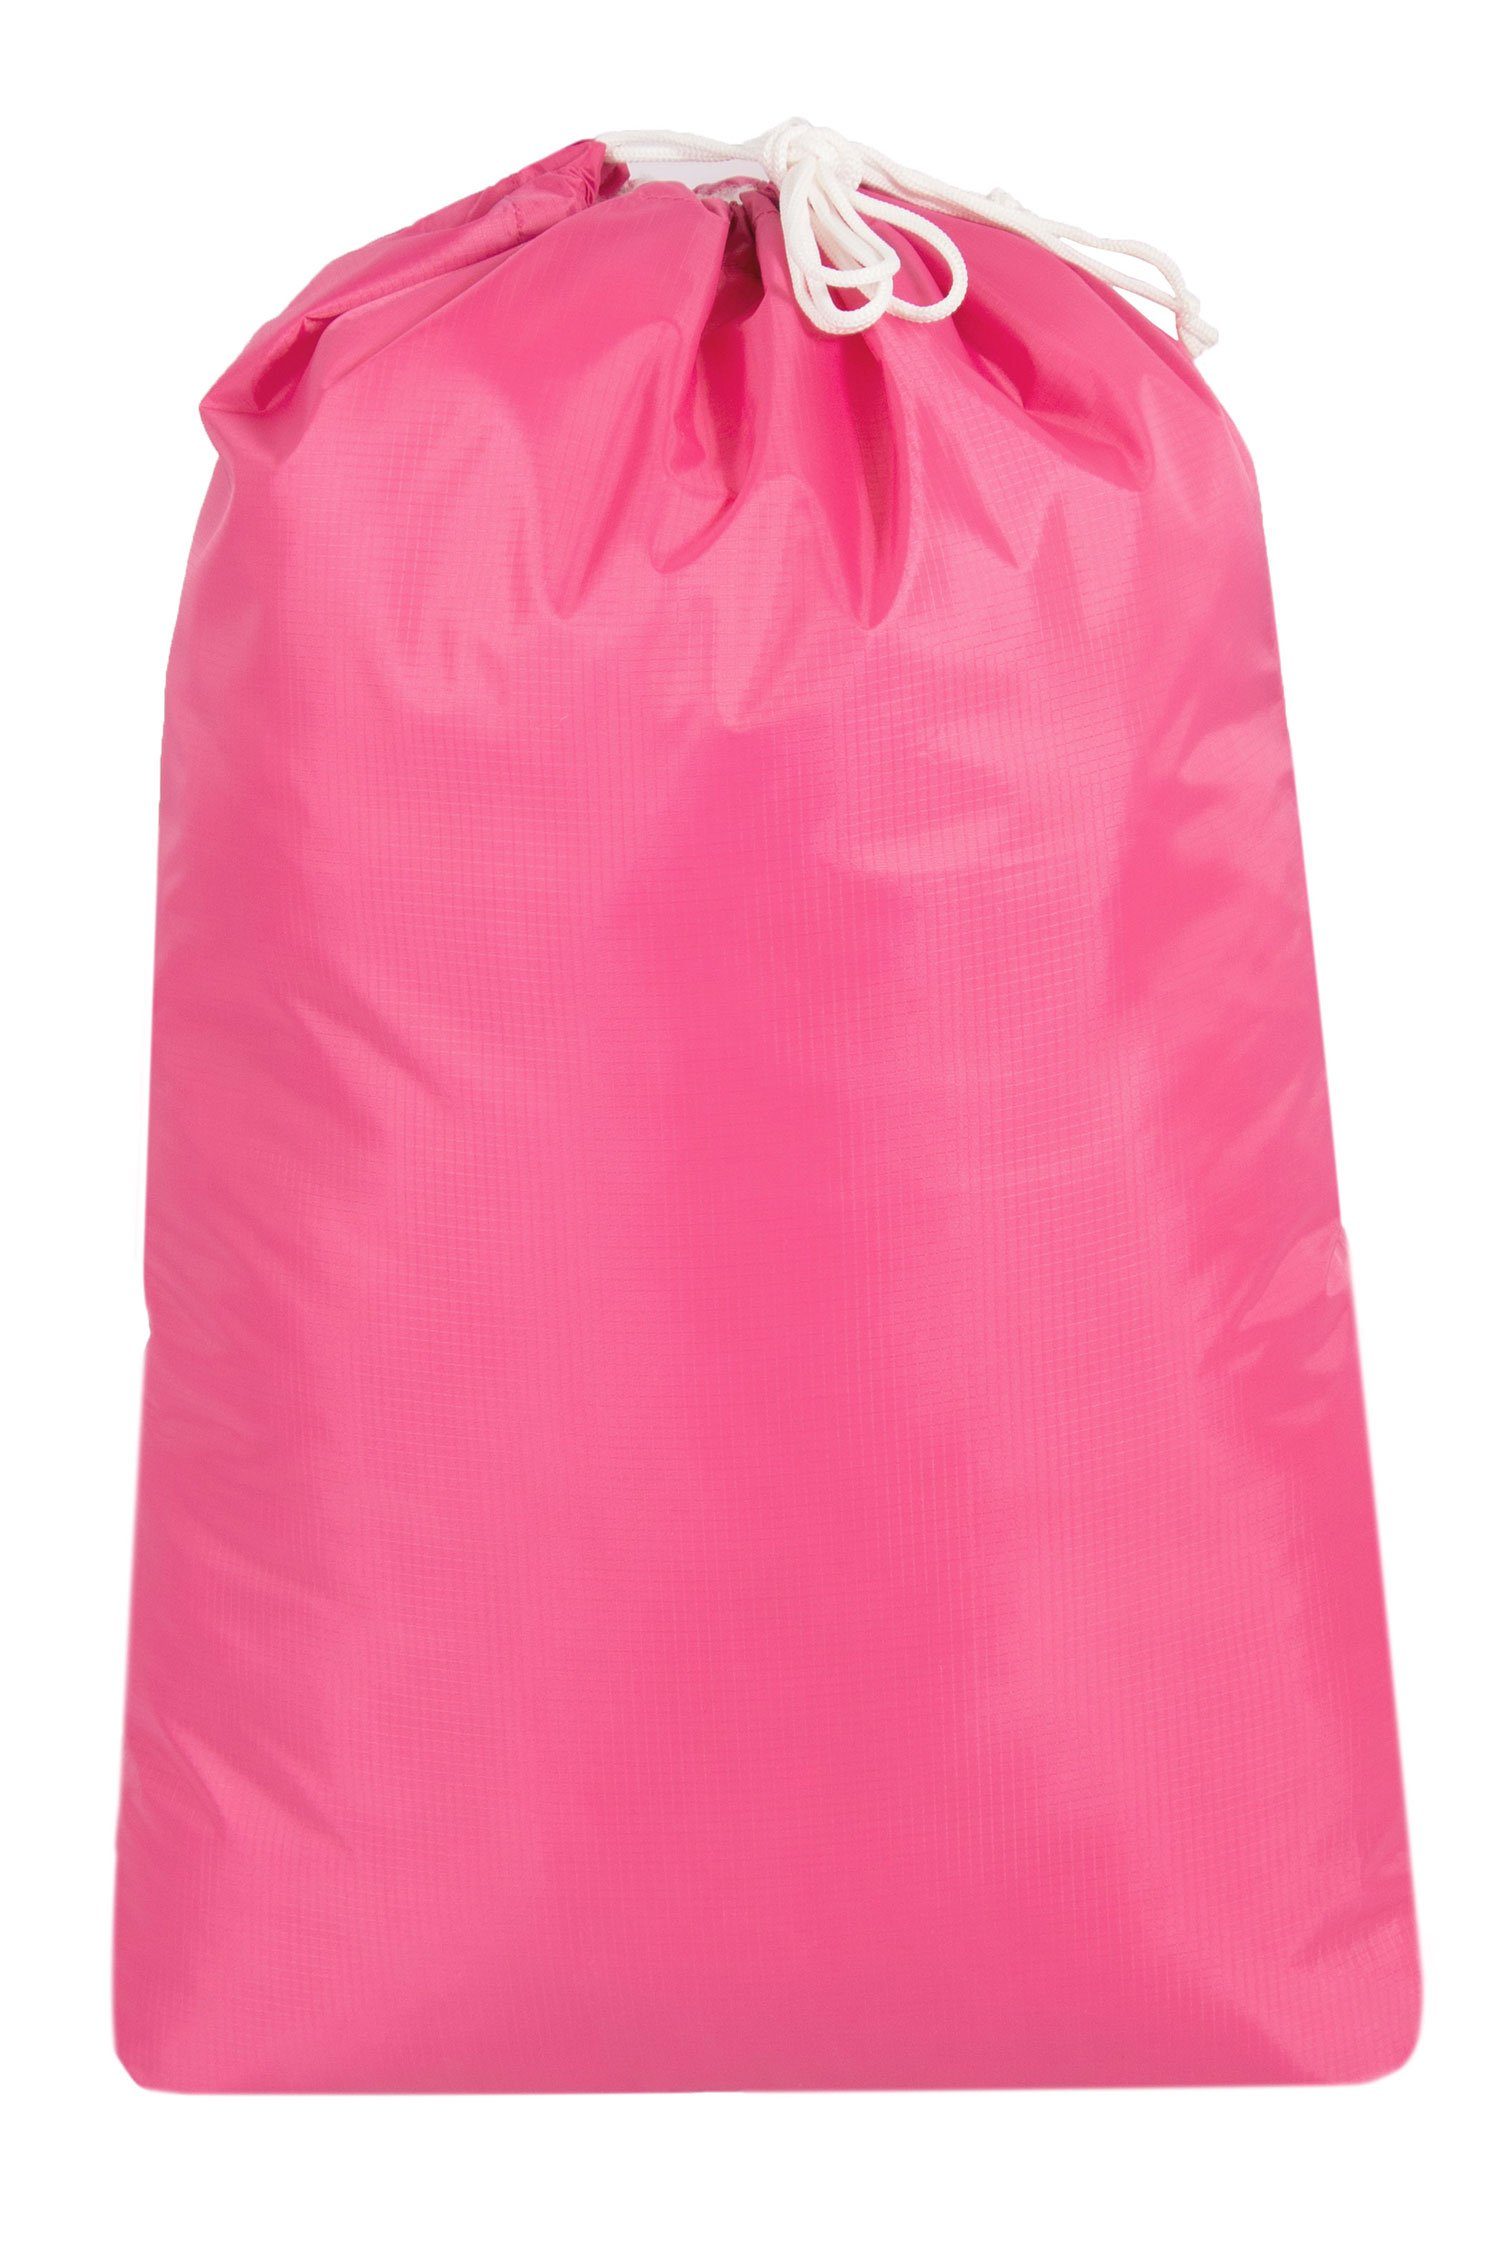 ZOLLNER24 Wäschesack (1 St), 100% Polyester, mit Kordelzug, wasserabweisend pink